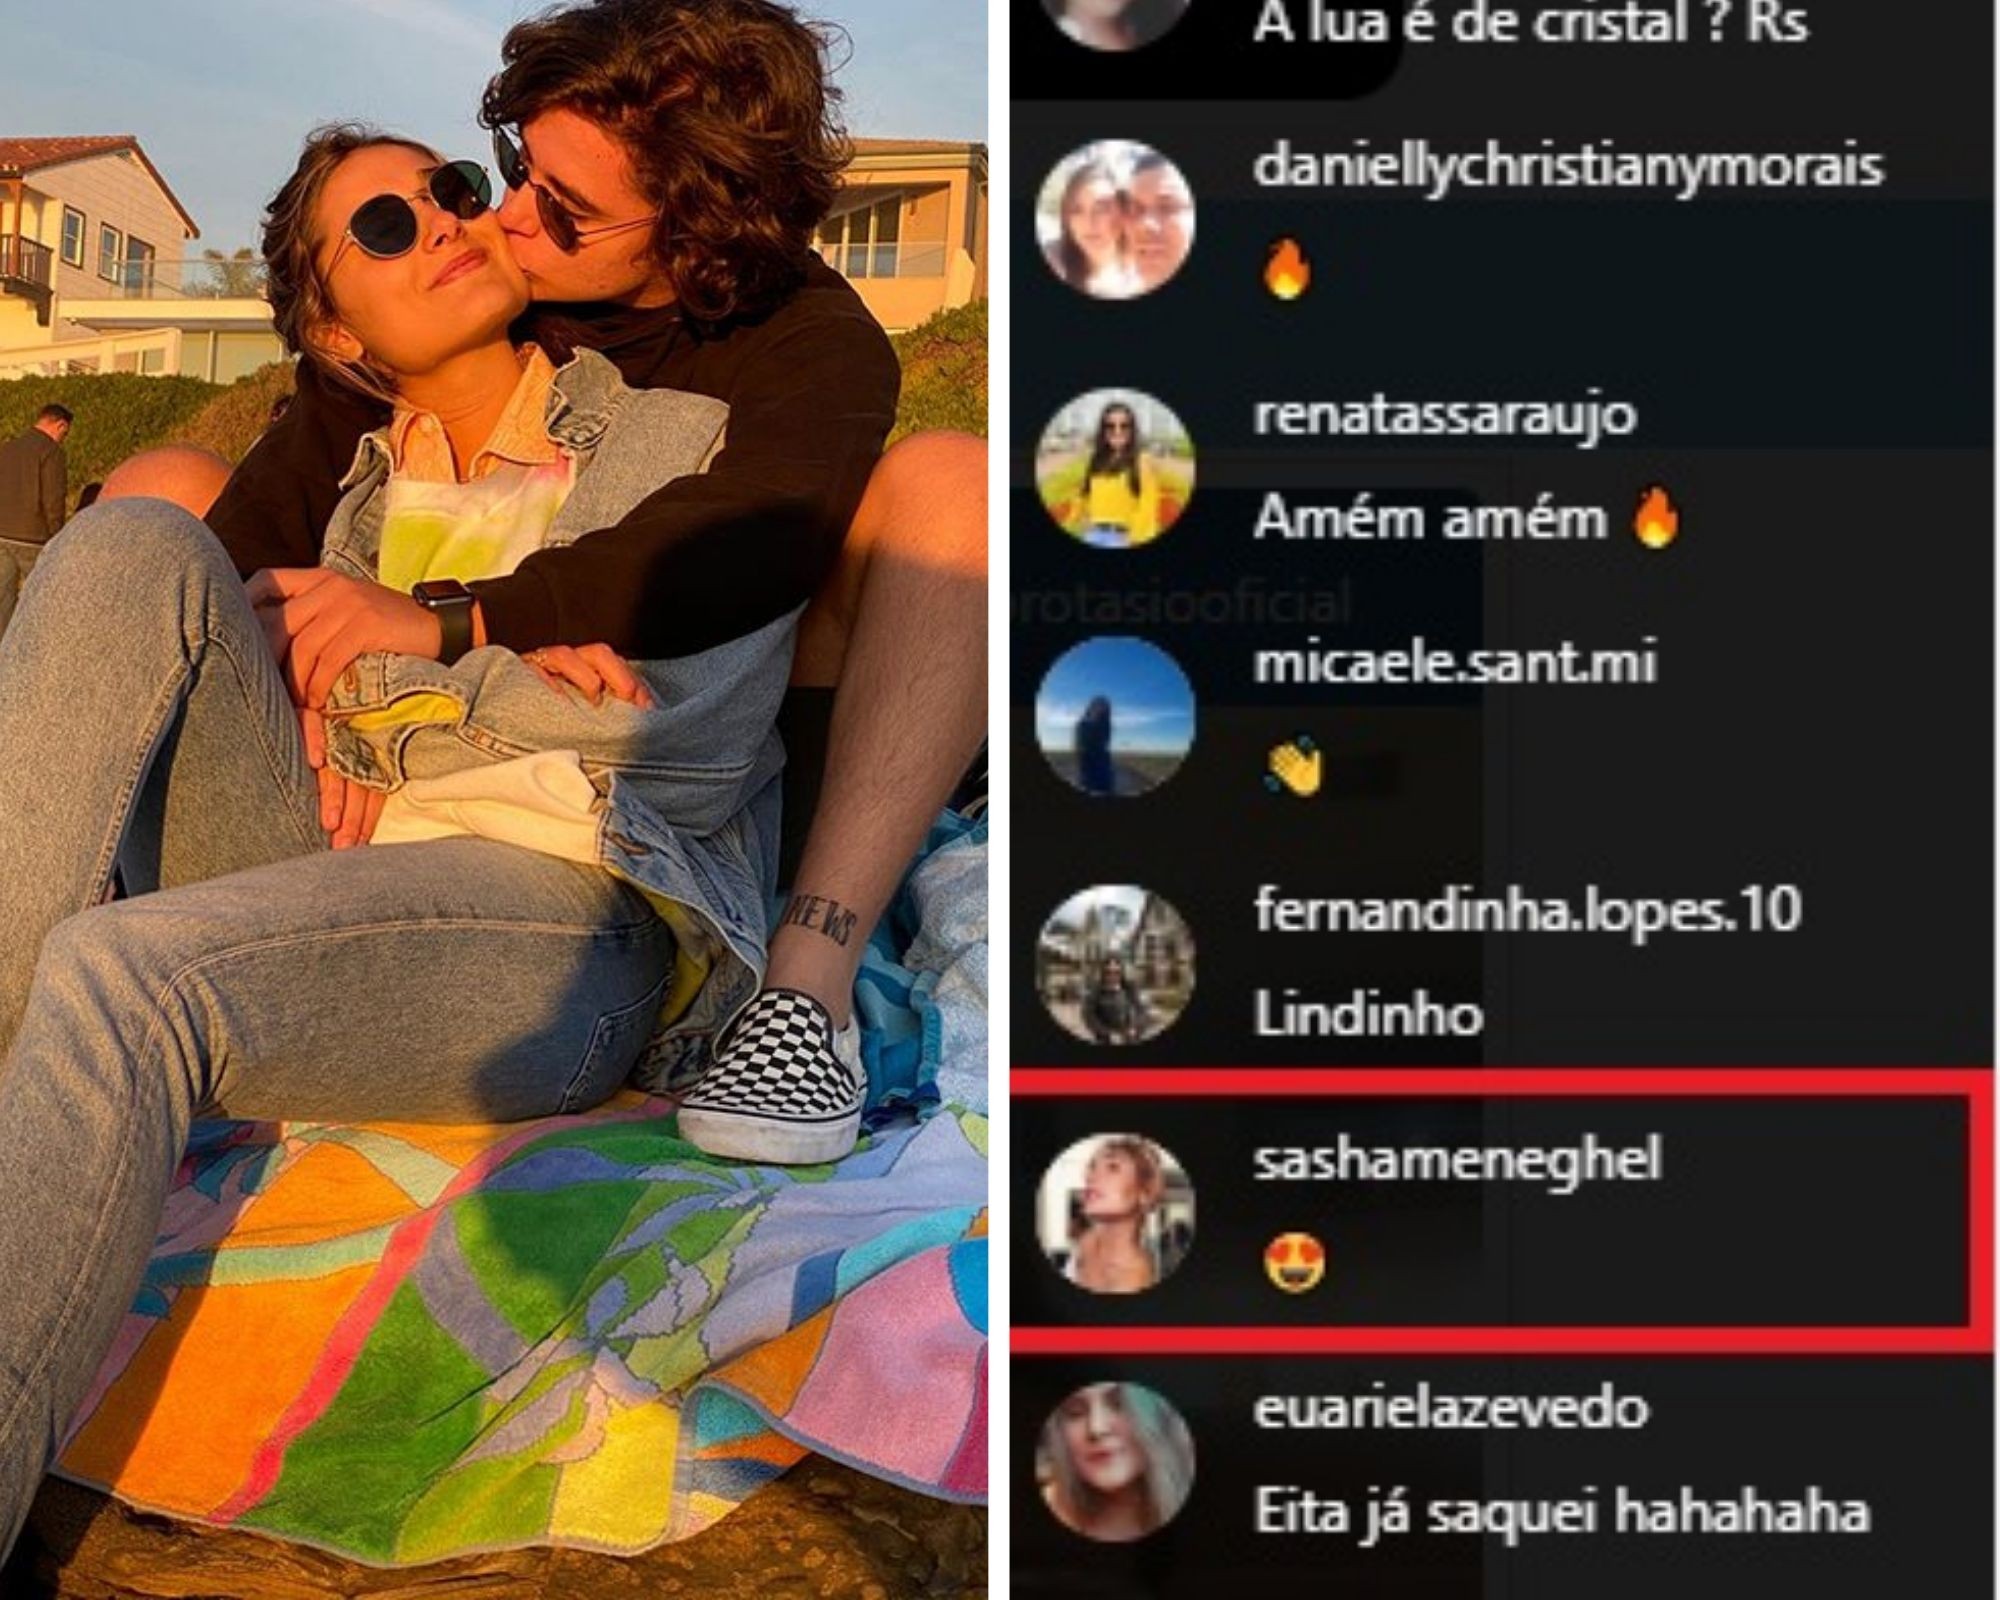 Sasha comenta live de João Figueiredo e ganha recado (Foto: Reprodução/Instagram)